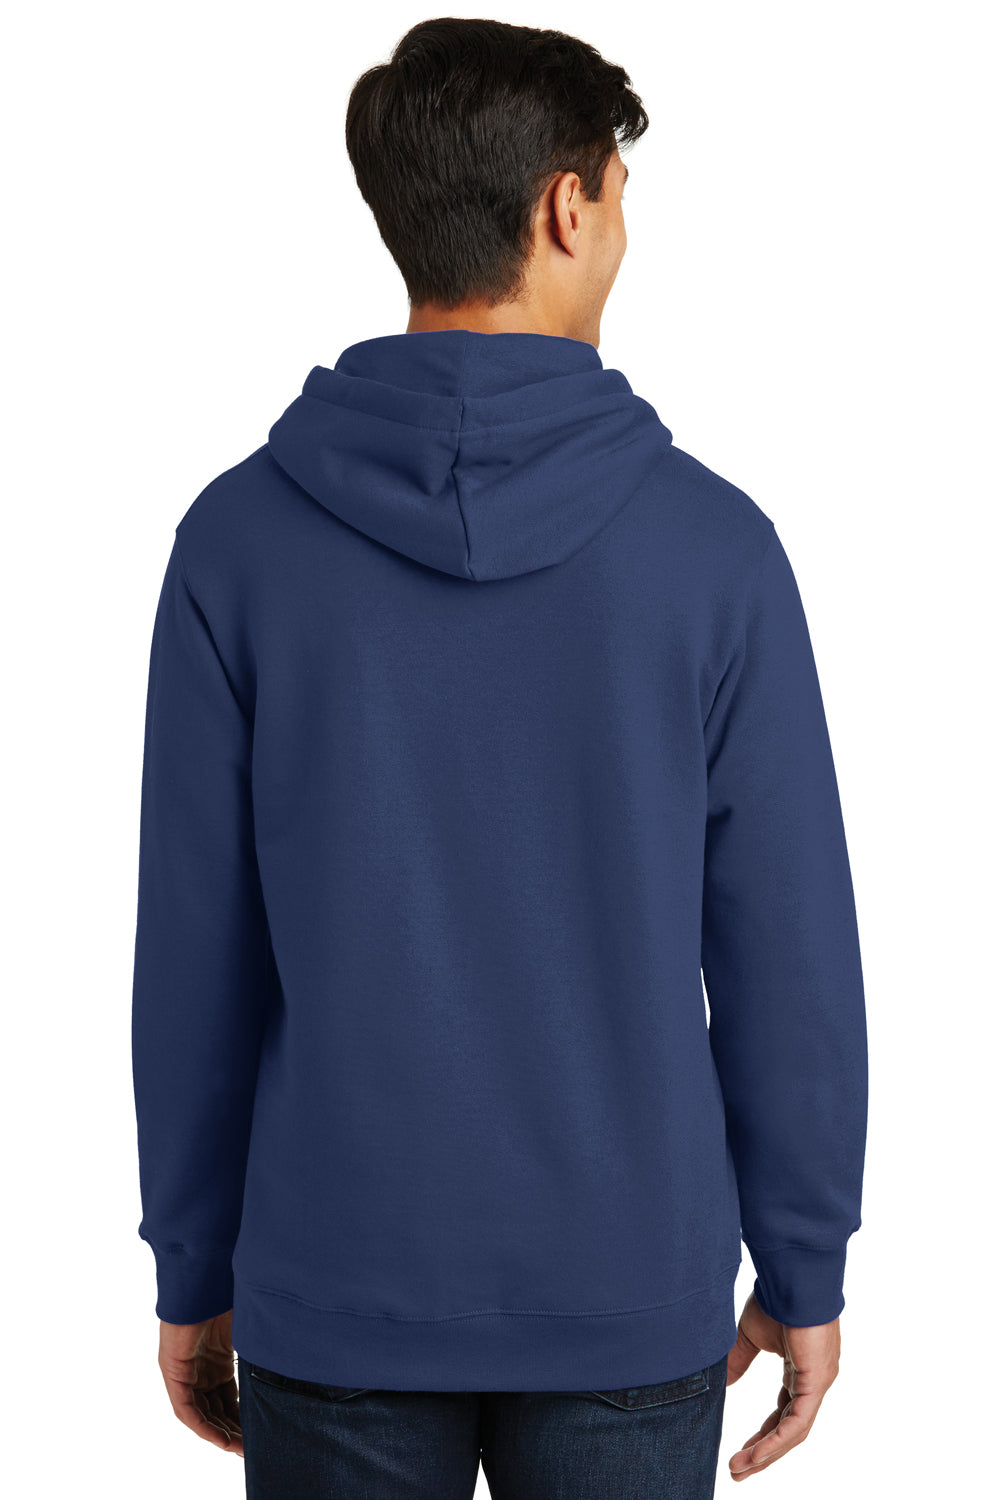 Port & Company PC850H Mens Fan Favorite Fleece Hooded Sweatshirt Hoodie Navy Blue Back